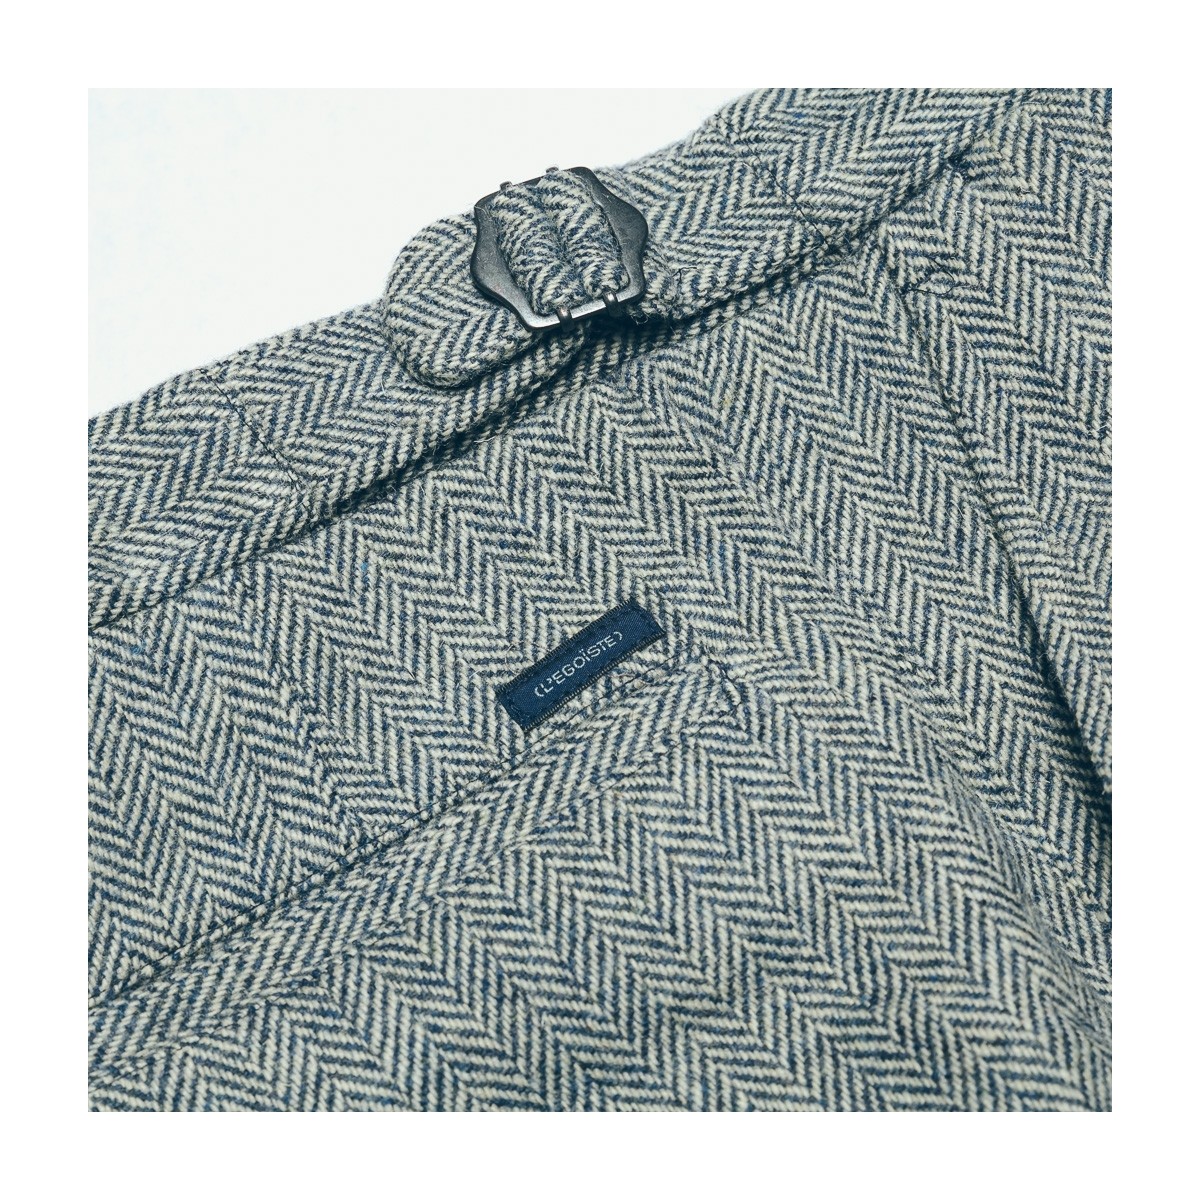 pantalon-a-pinces-en-laine-chevron-gris-detail-ceinture